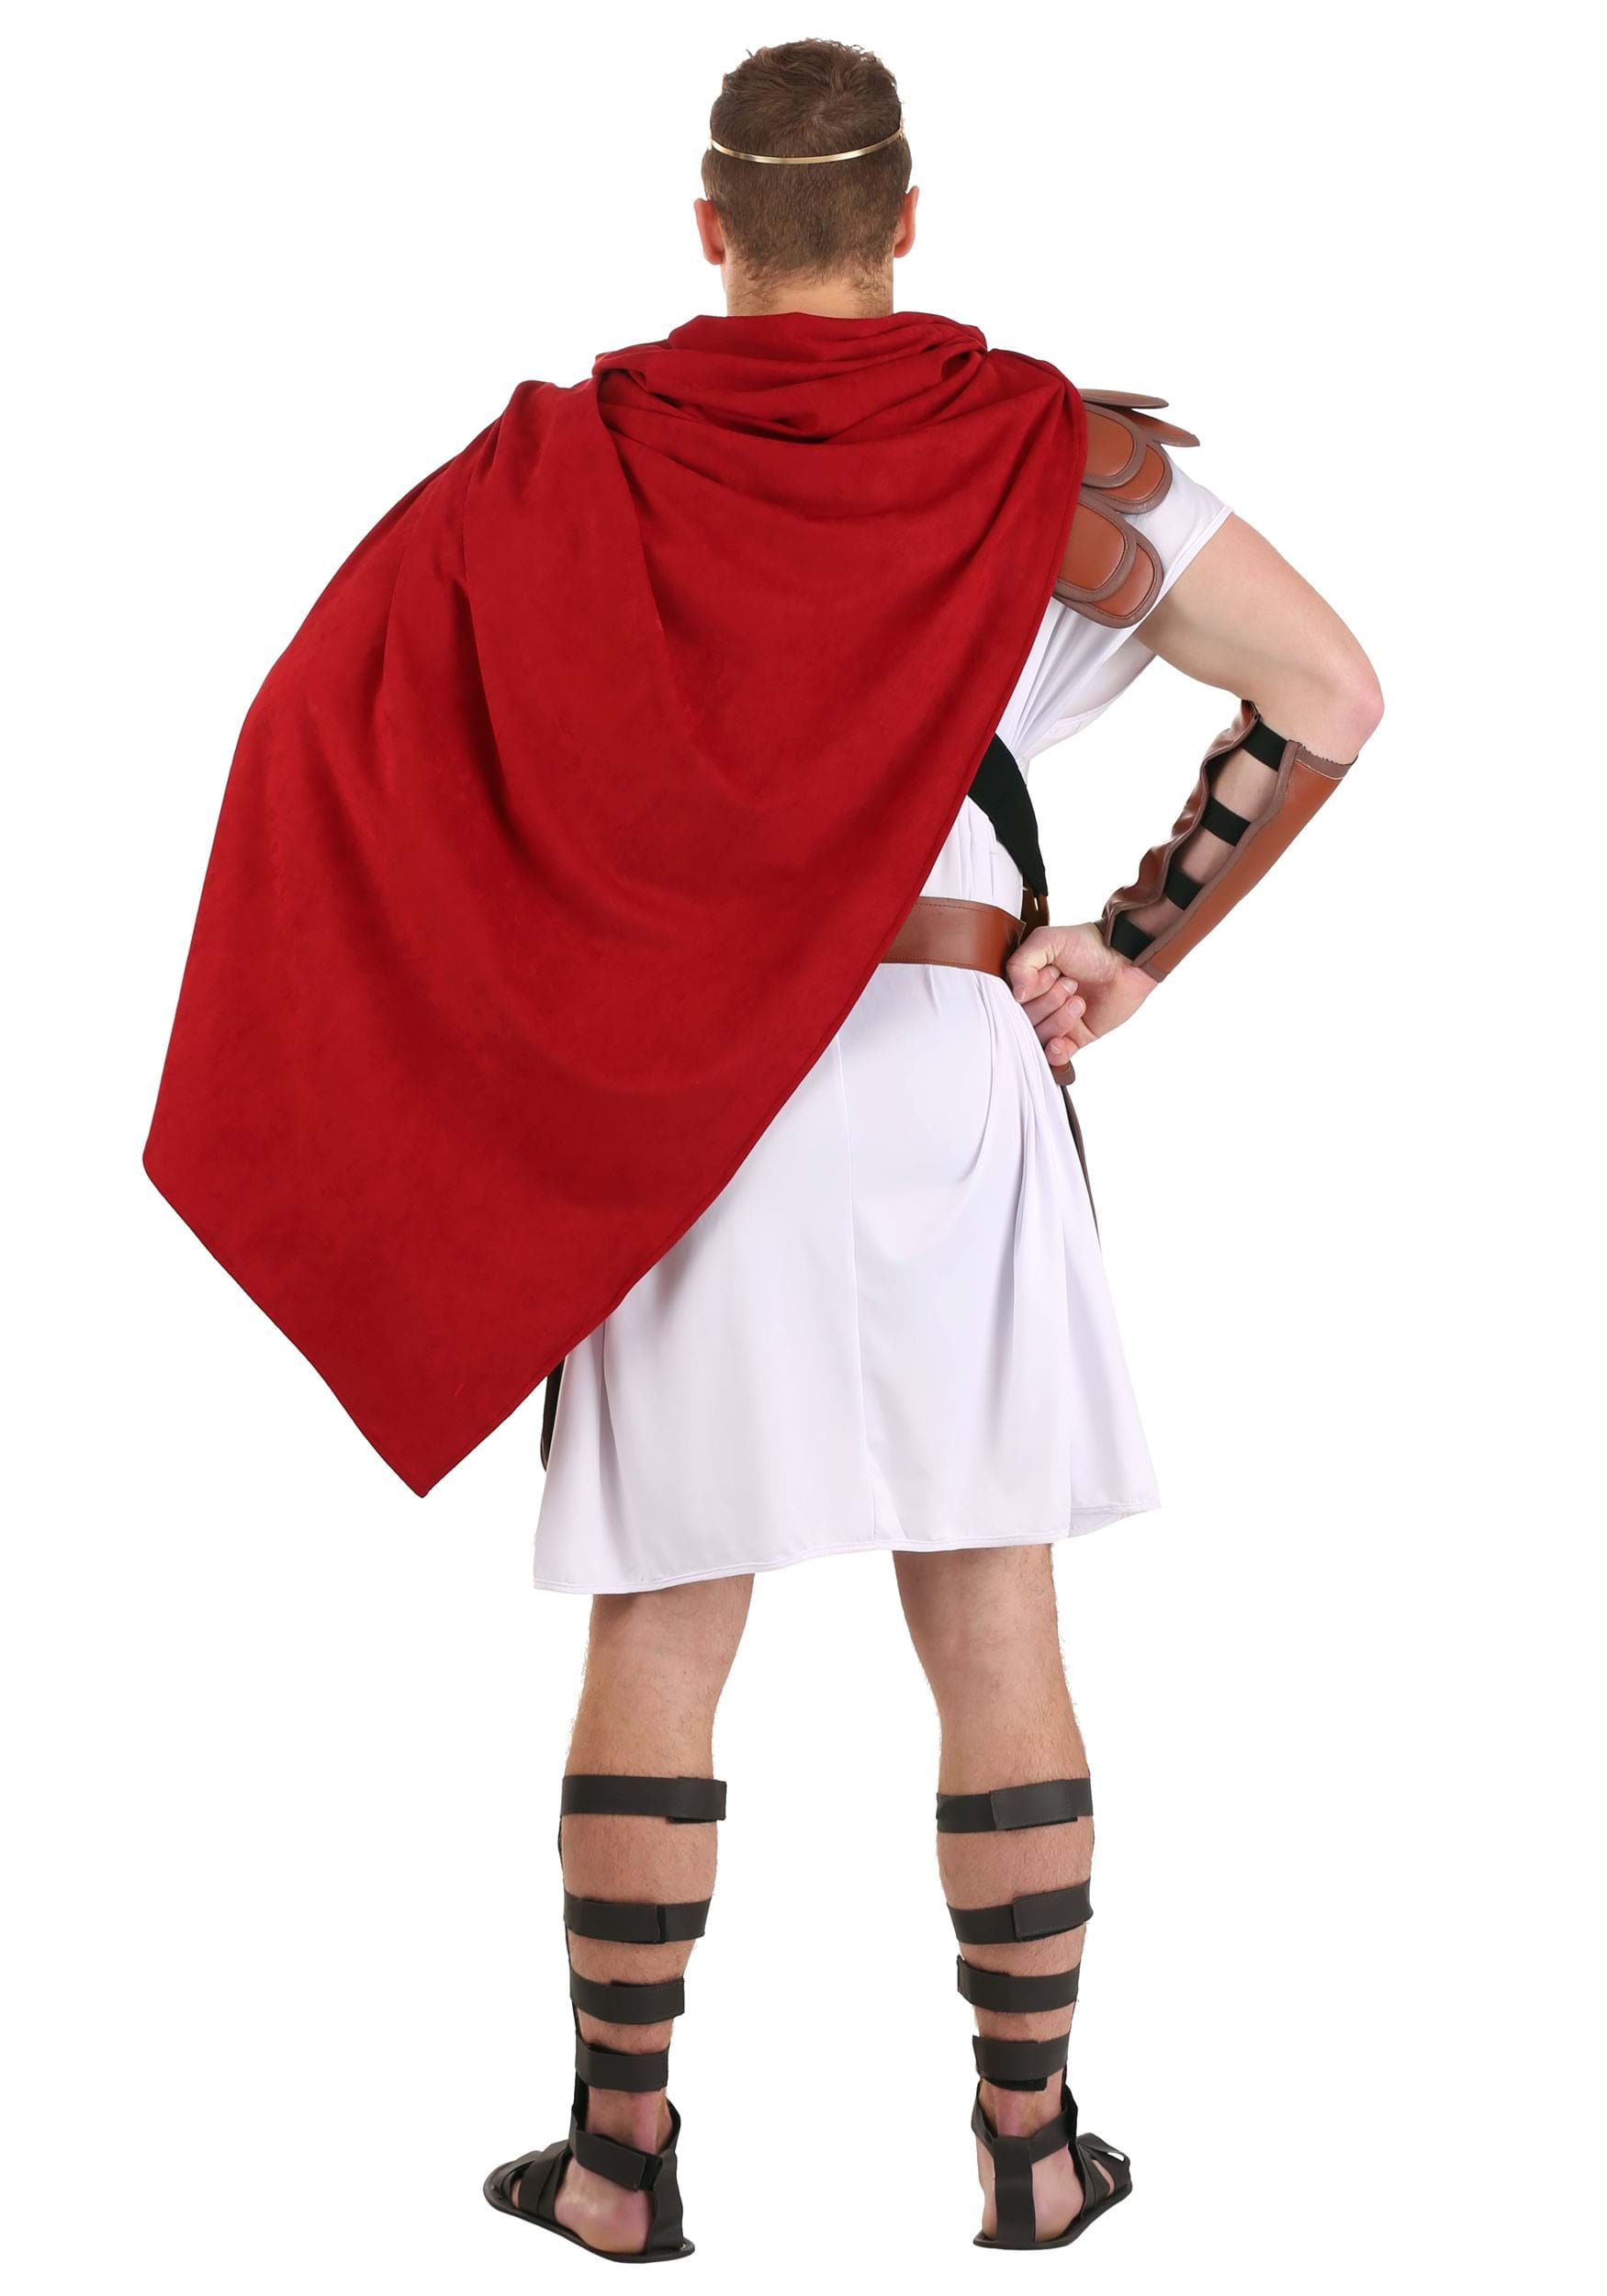 Imperial Caesar Costume For Men